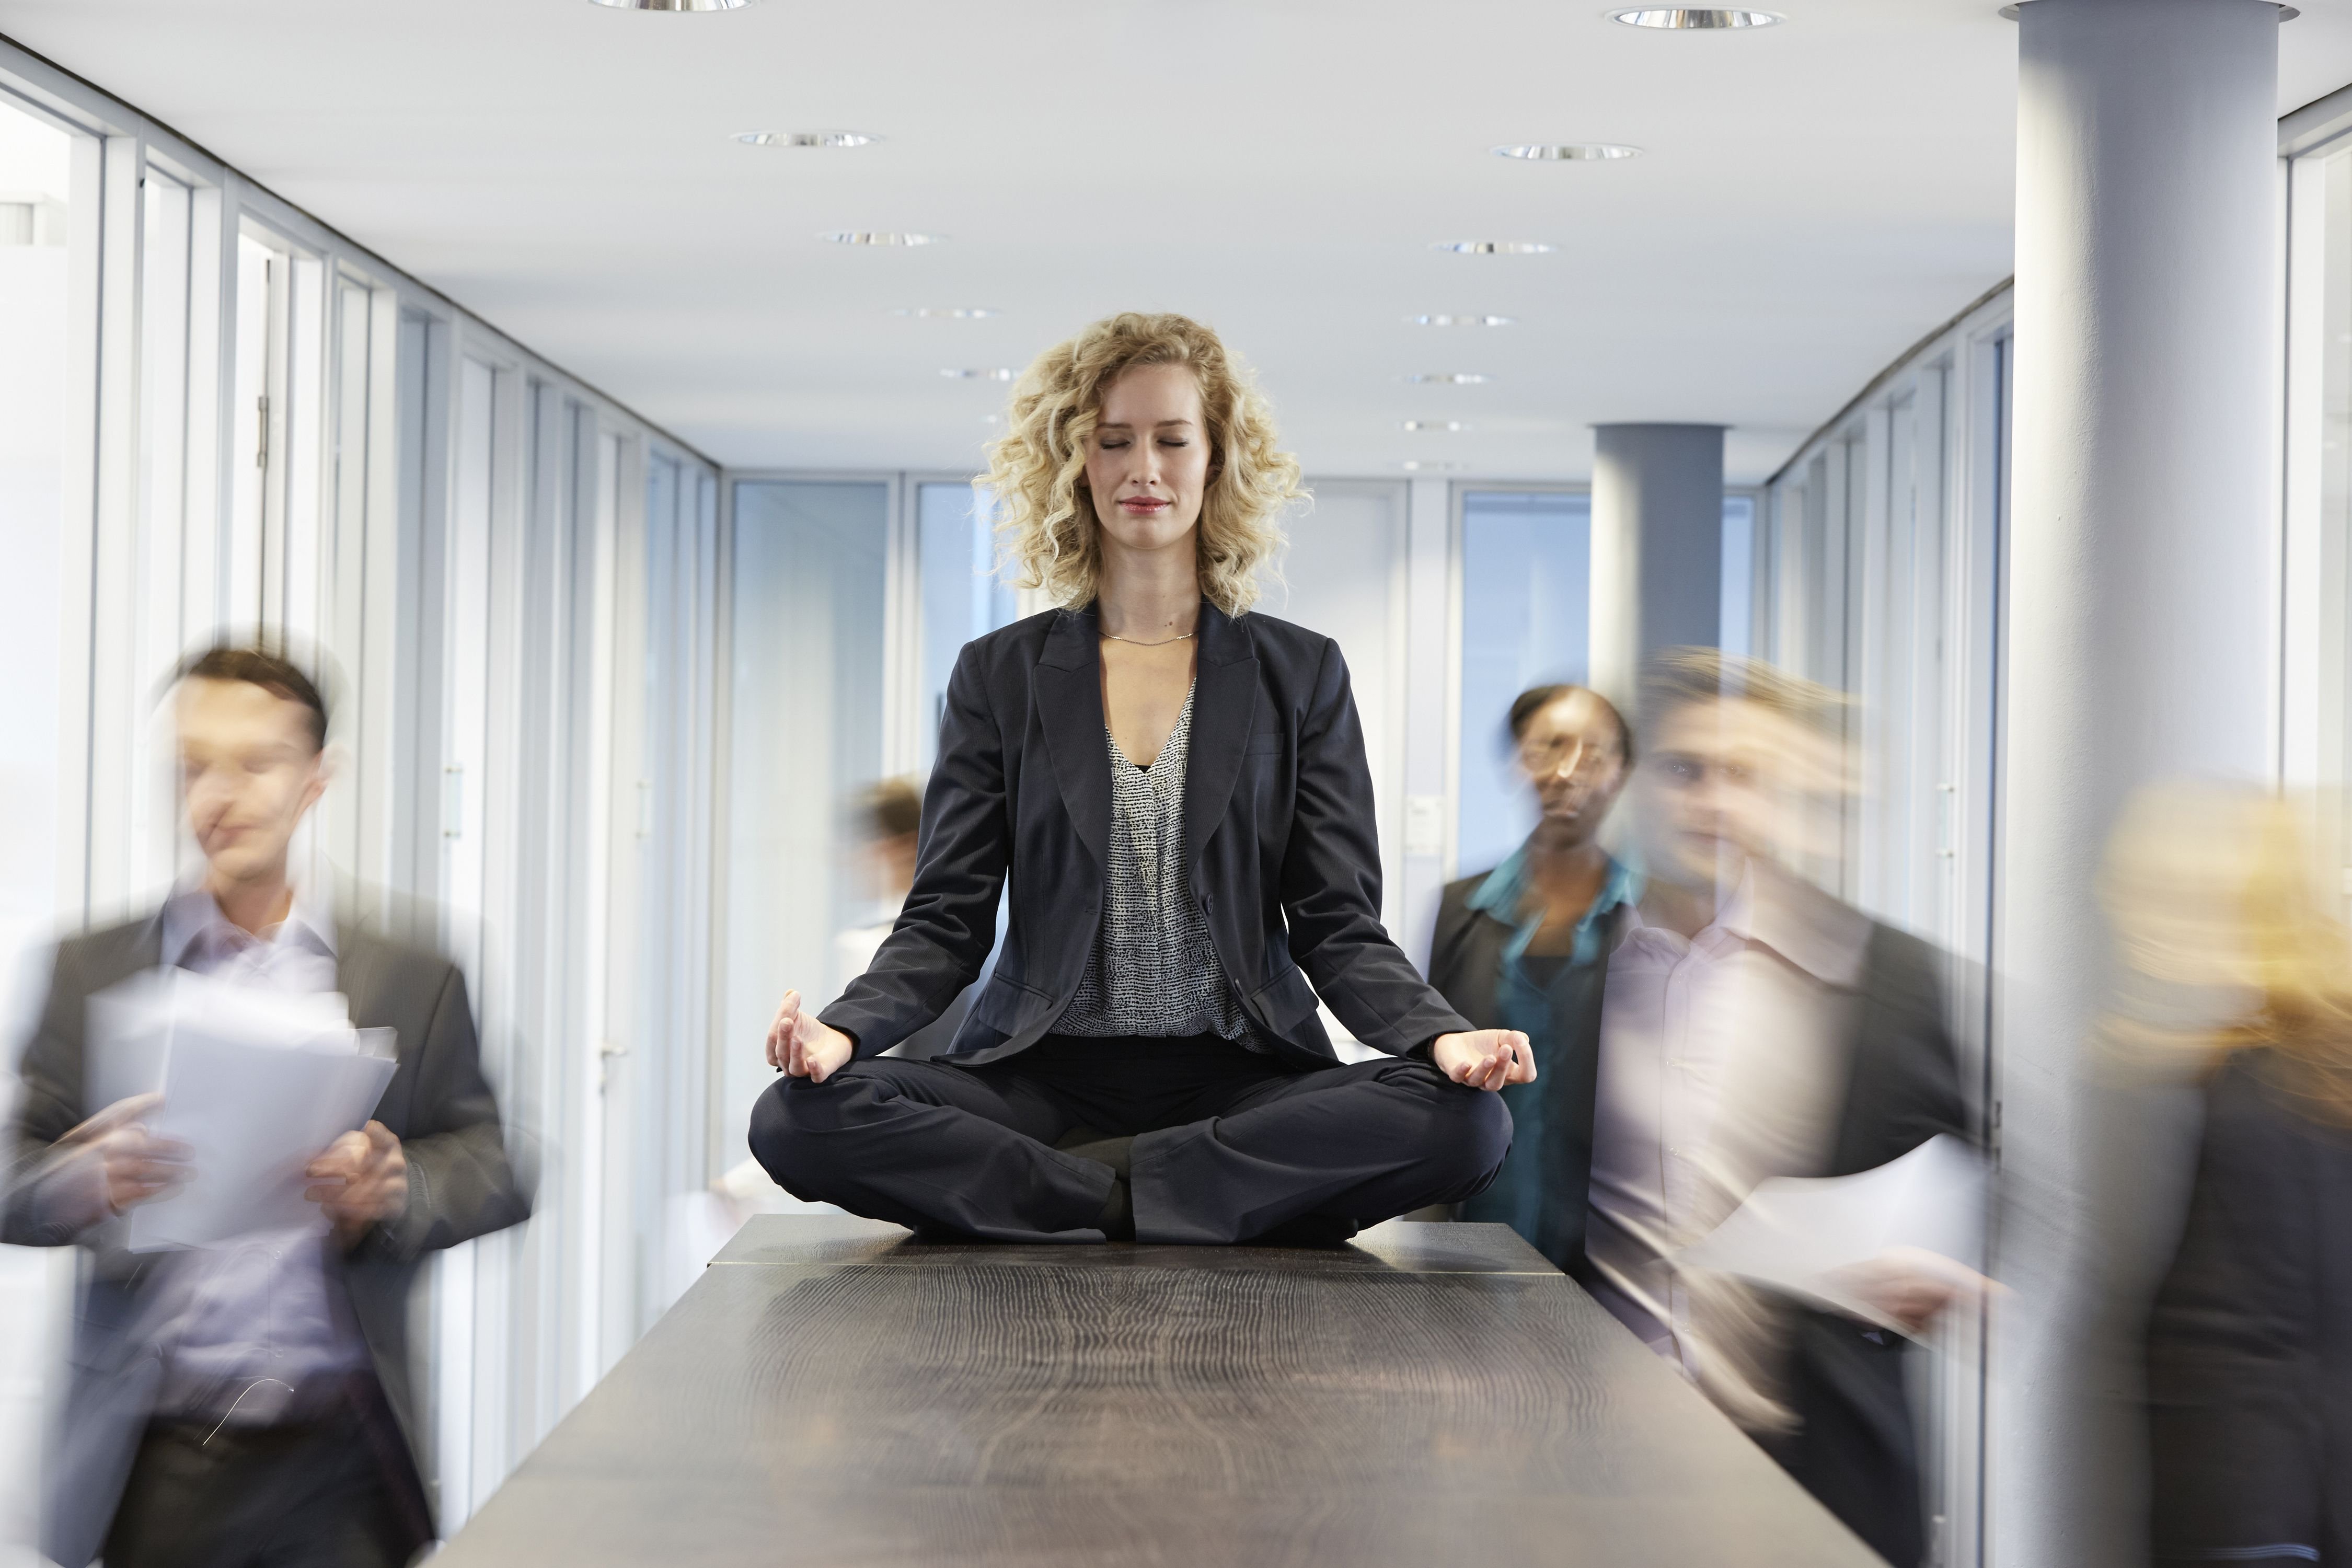 Тренинг по стрессу. Медитация в офисе. Эмоциональное пространство. Спокойствие в офисе. Адаптация к стрессу.